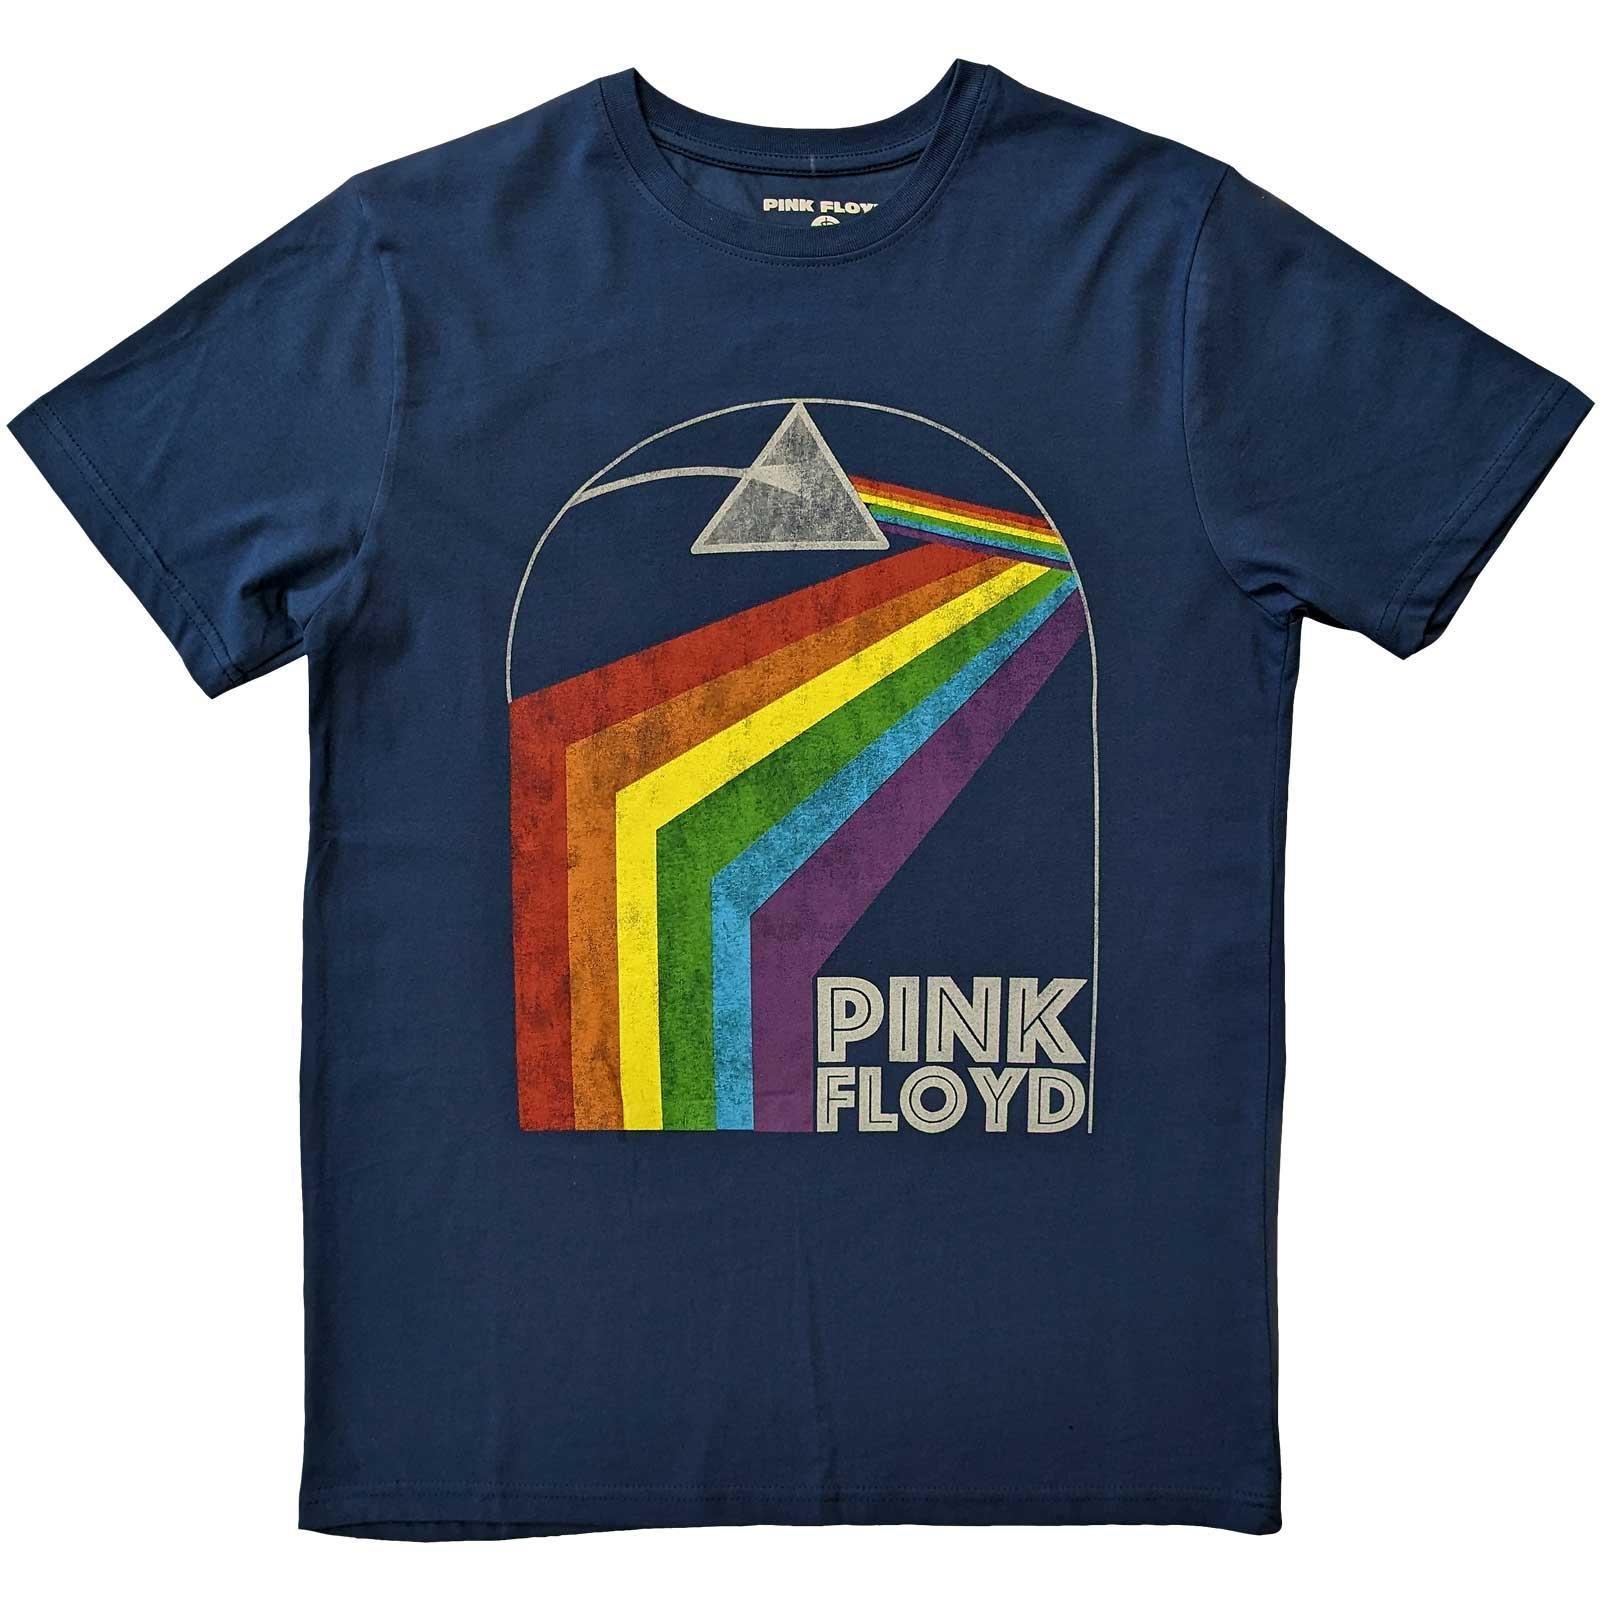 Pink Floyd  Prism Arch TShirt 